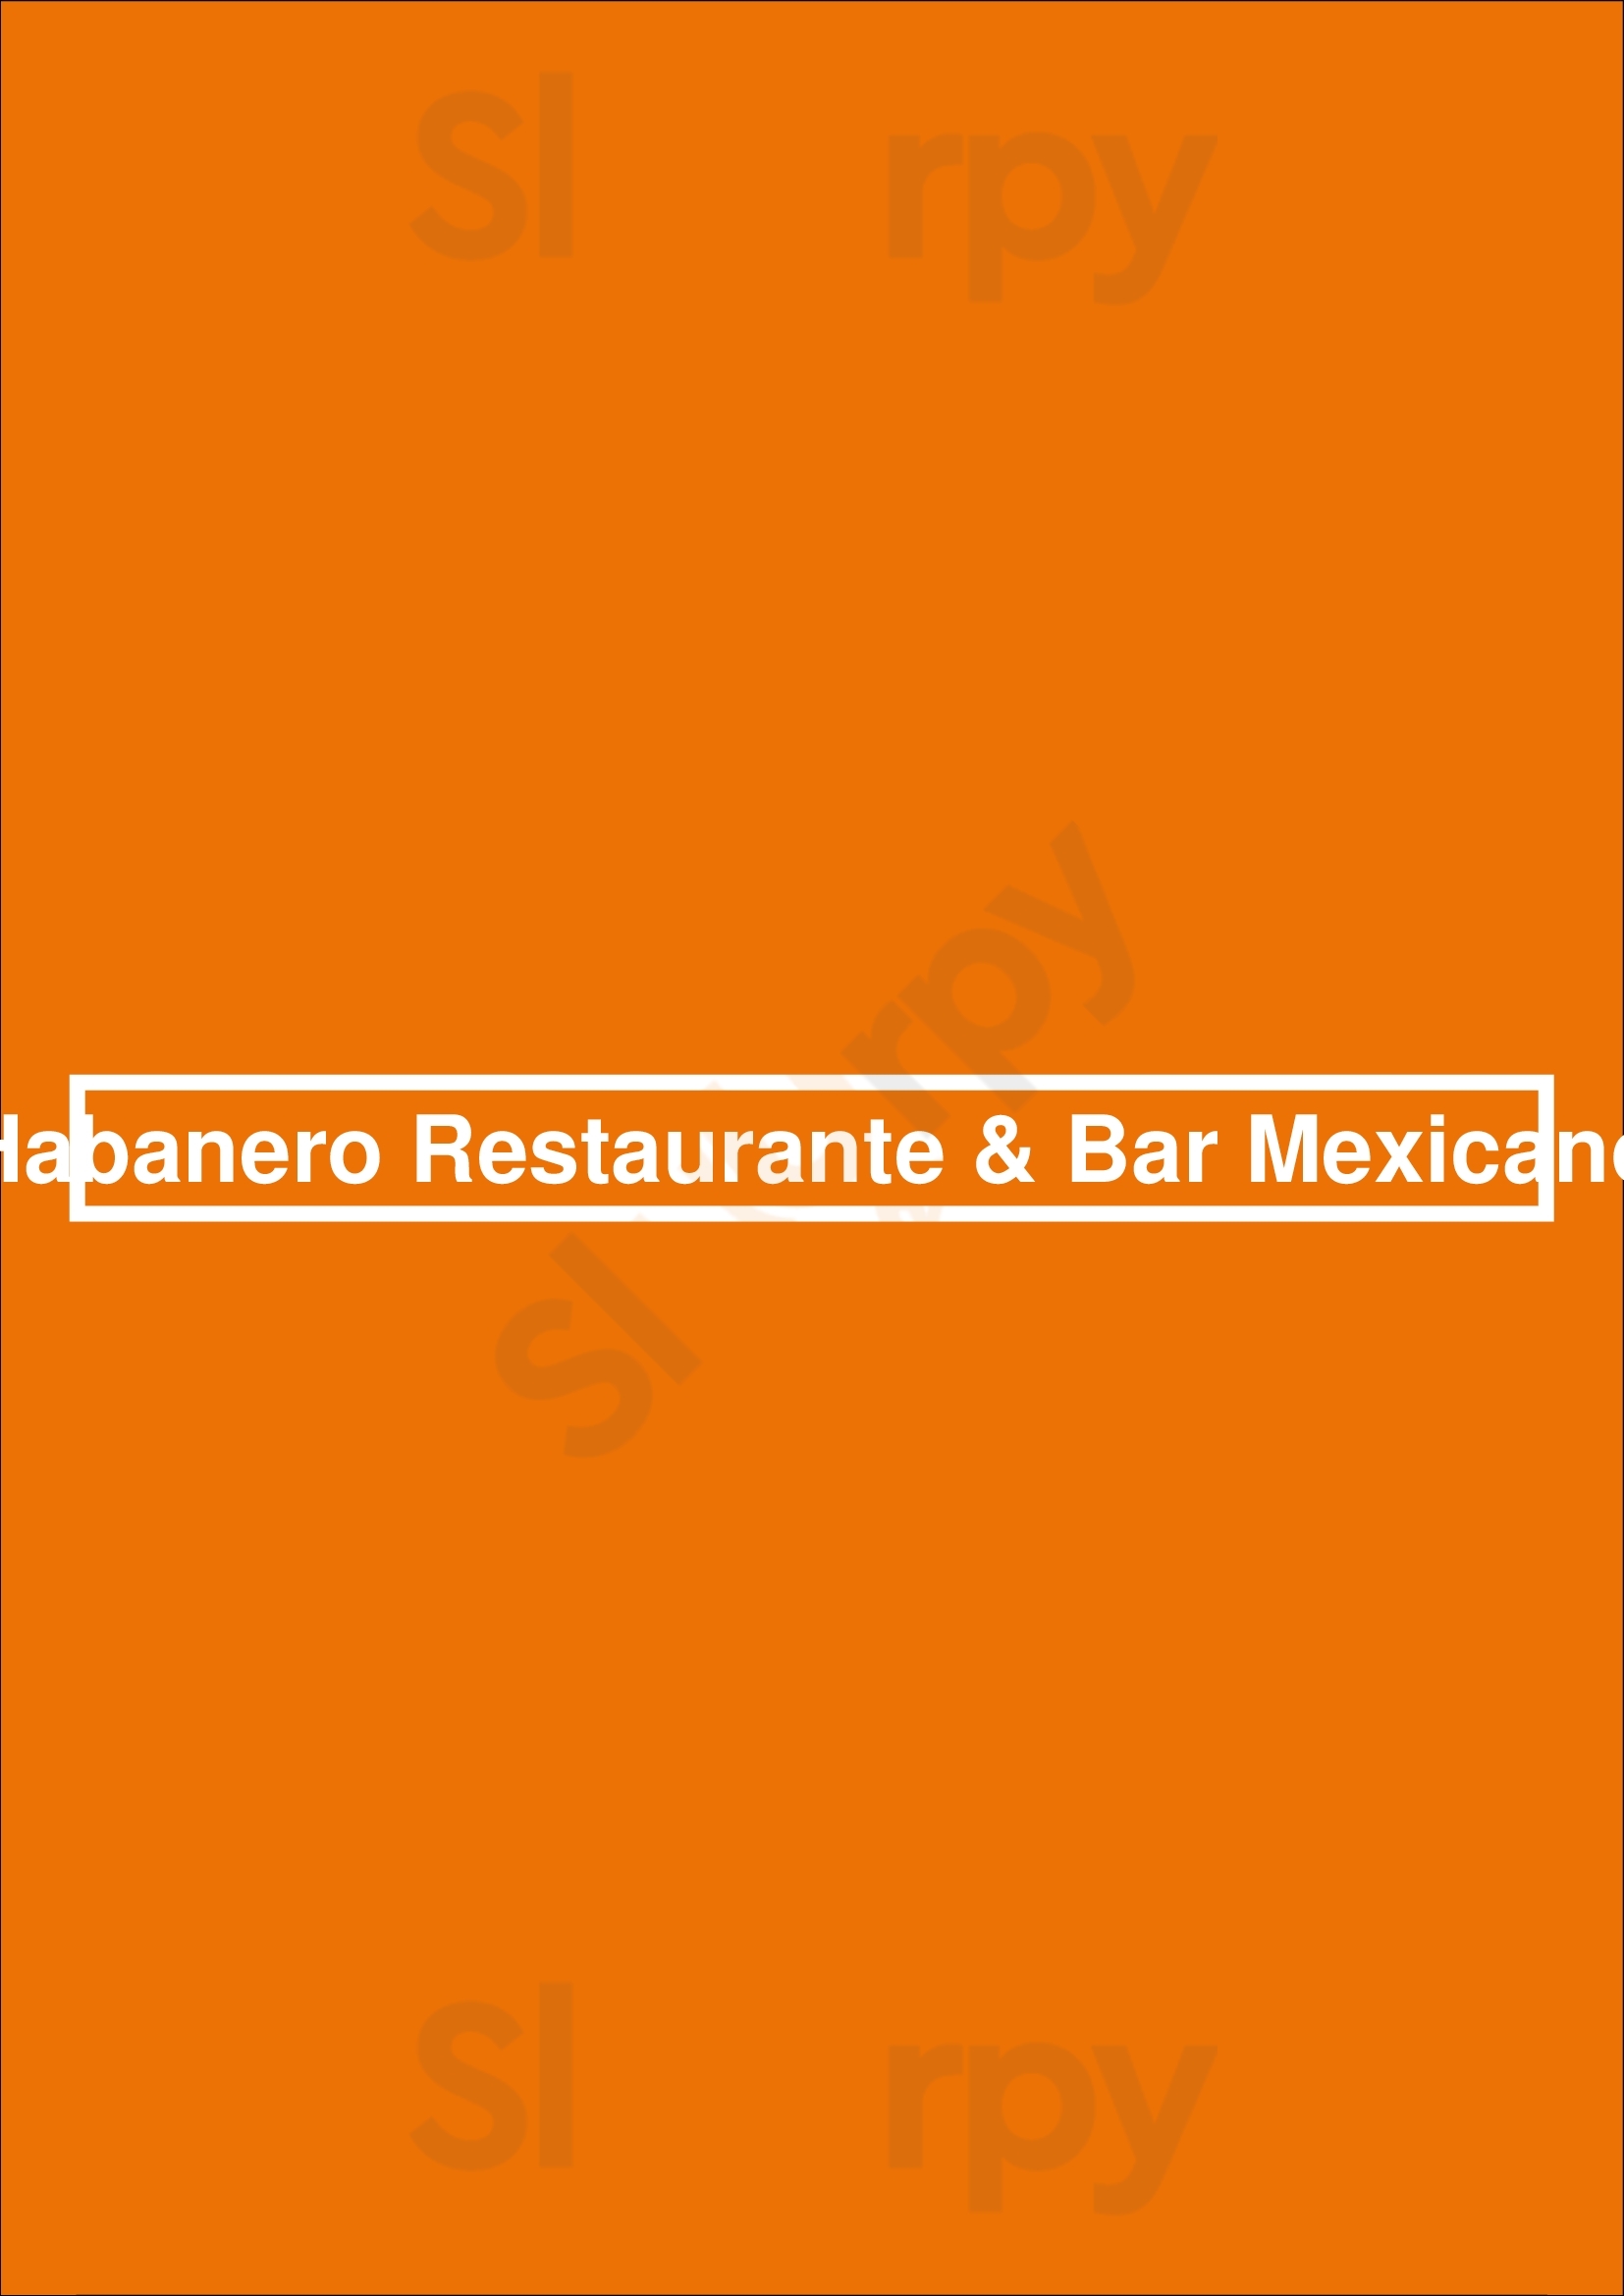 Habanero Restaurante & Bar Mexicano Braga Menu - 1